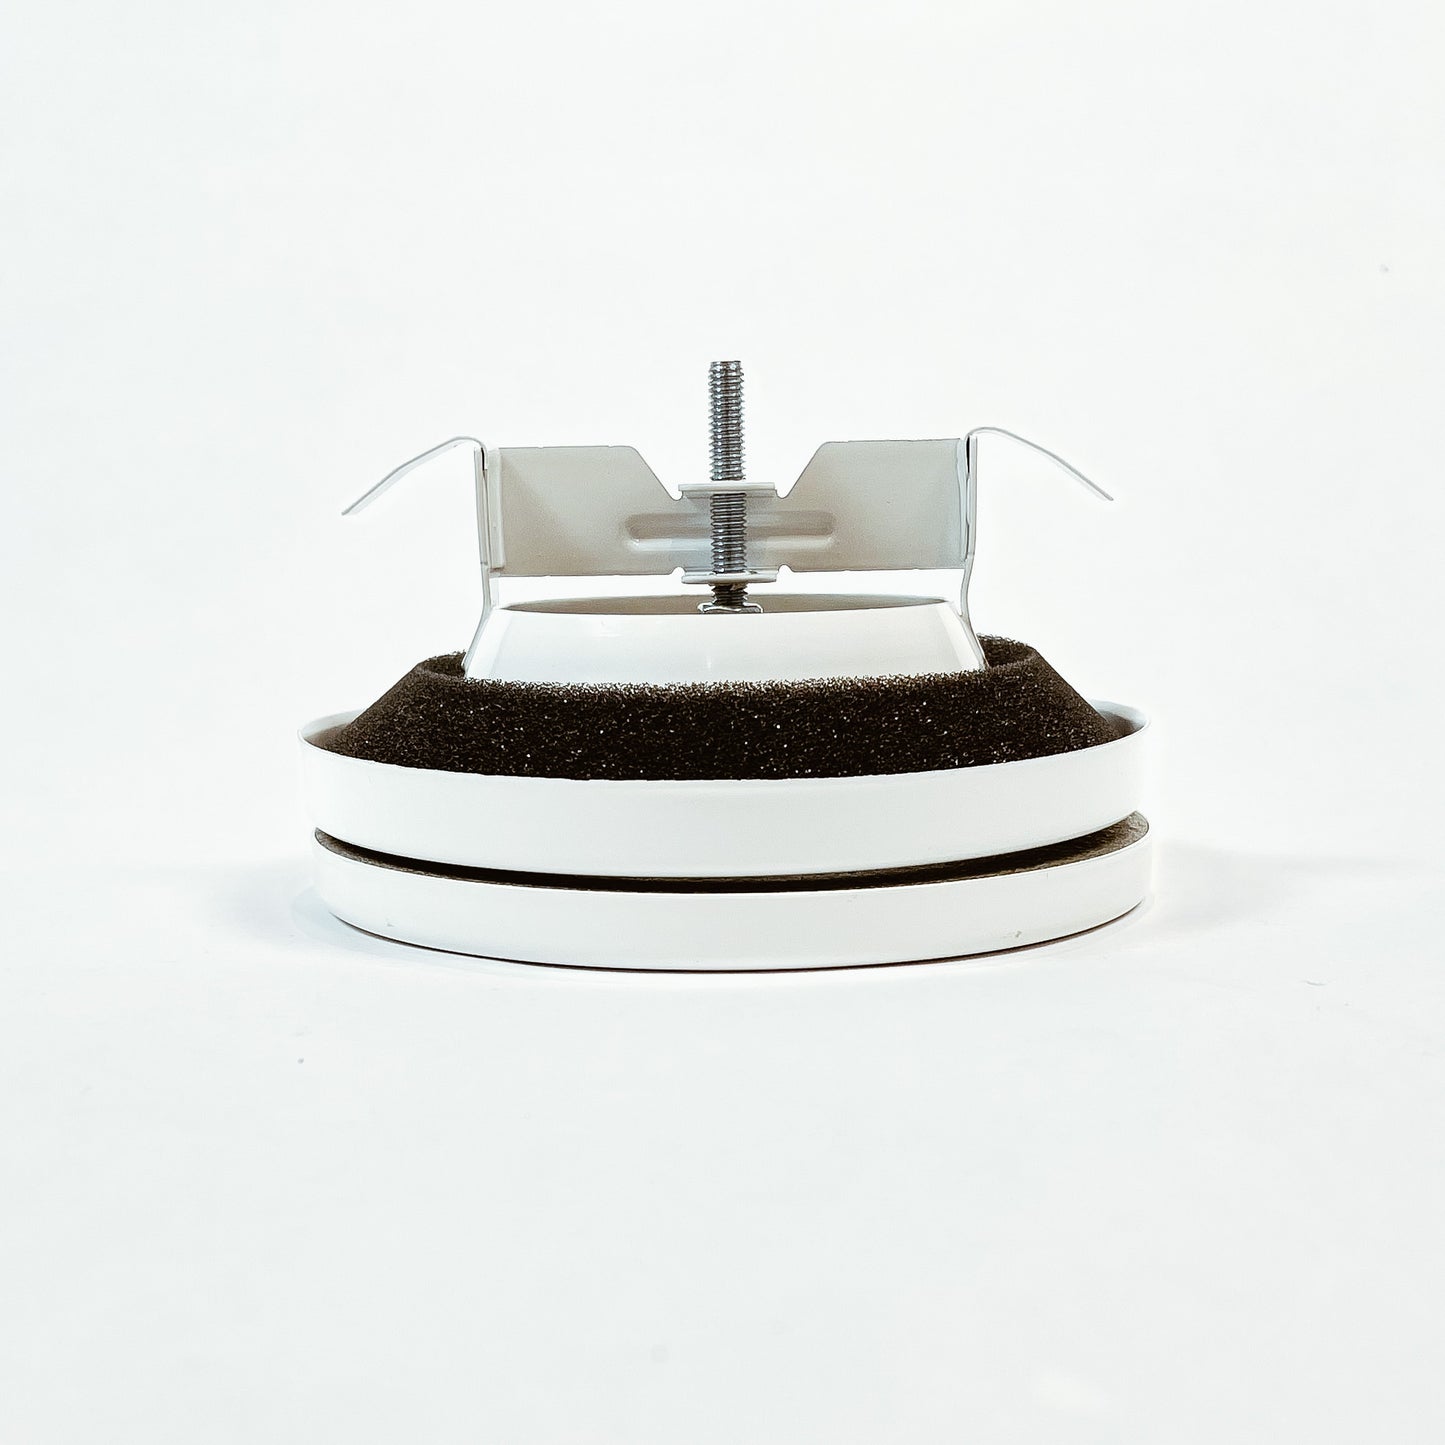 Diffuseur rond de plafond de haute qualité - Acier prépeint blanc - Design minimaliste - MGS